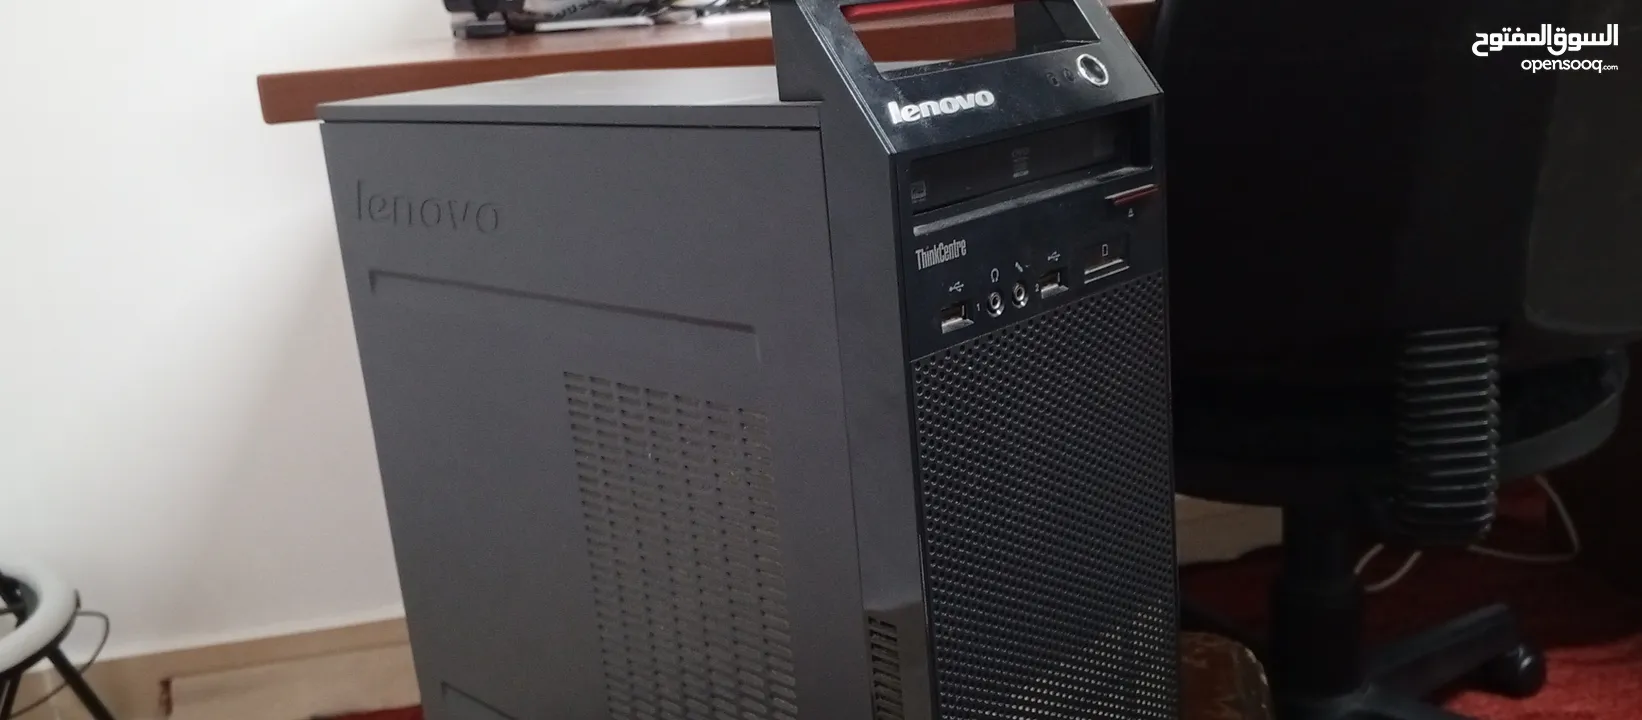 جهاز كمبيوتر من نوع Lenovo .جهاز محالة جيدا جداً. ،Intel(R) Core(TM) i3-4130 CPU @3.40GHz  RAM(8)